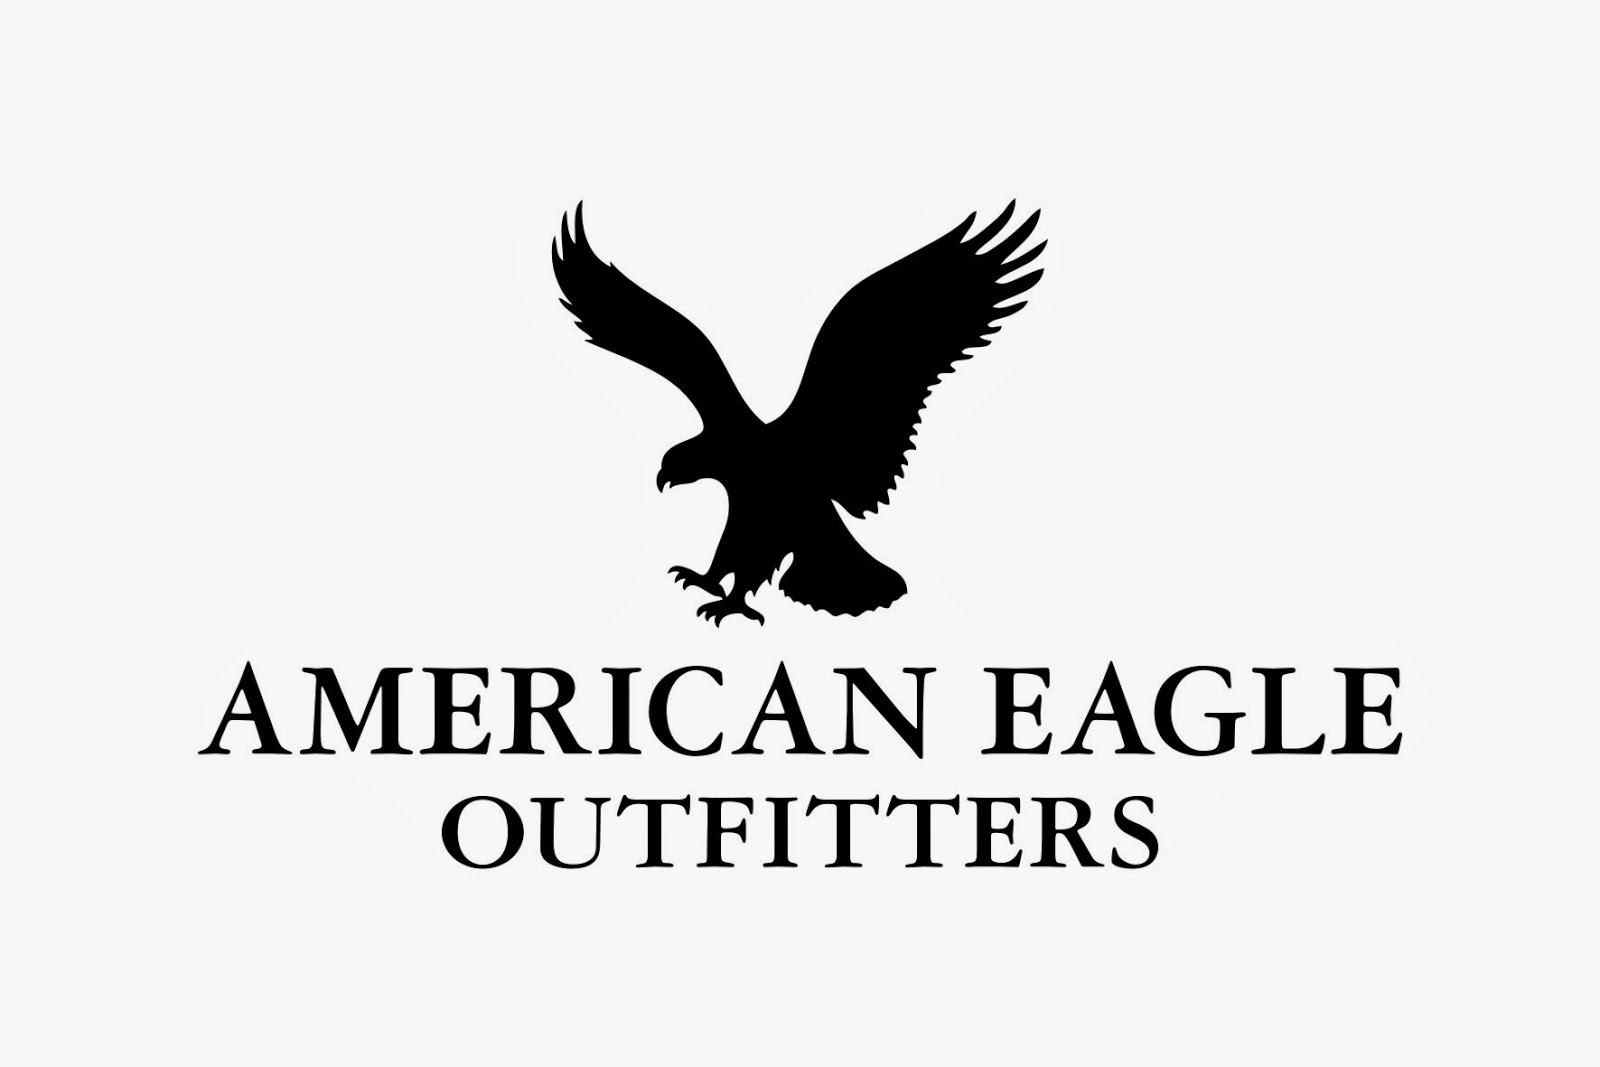 Американ игл. Фирма одежды с птицей. Марка одежды с логотипом птицы. Бренд одежды с птицей на логотипе. Бренд с орлом.